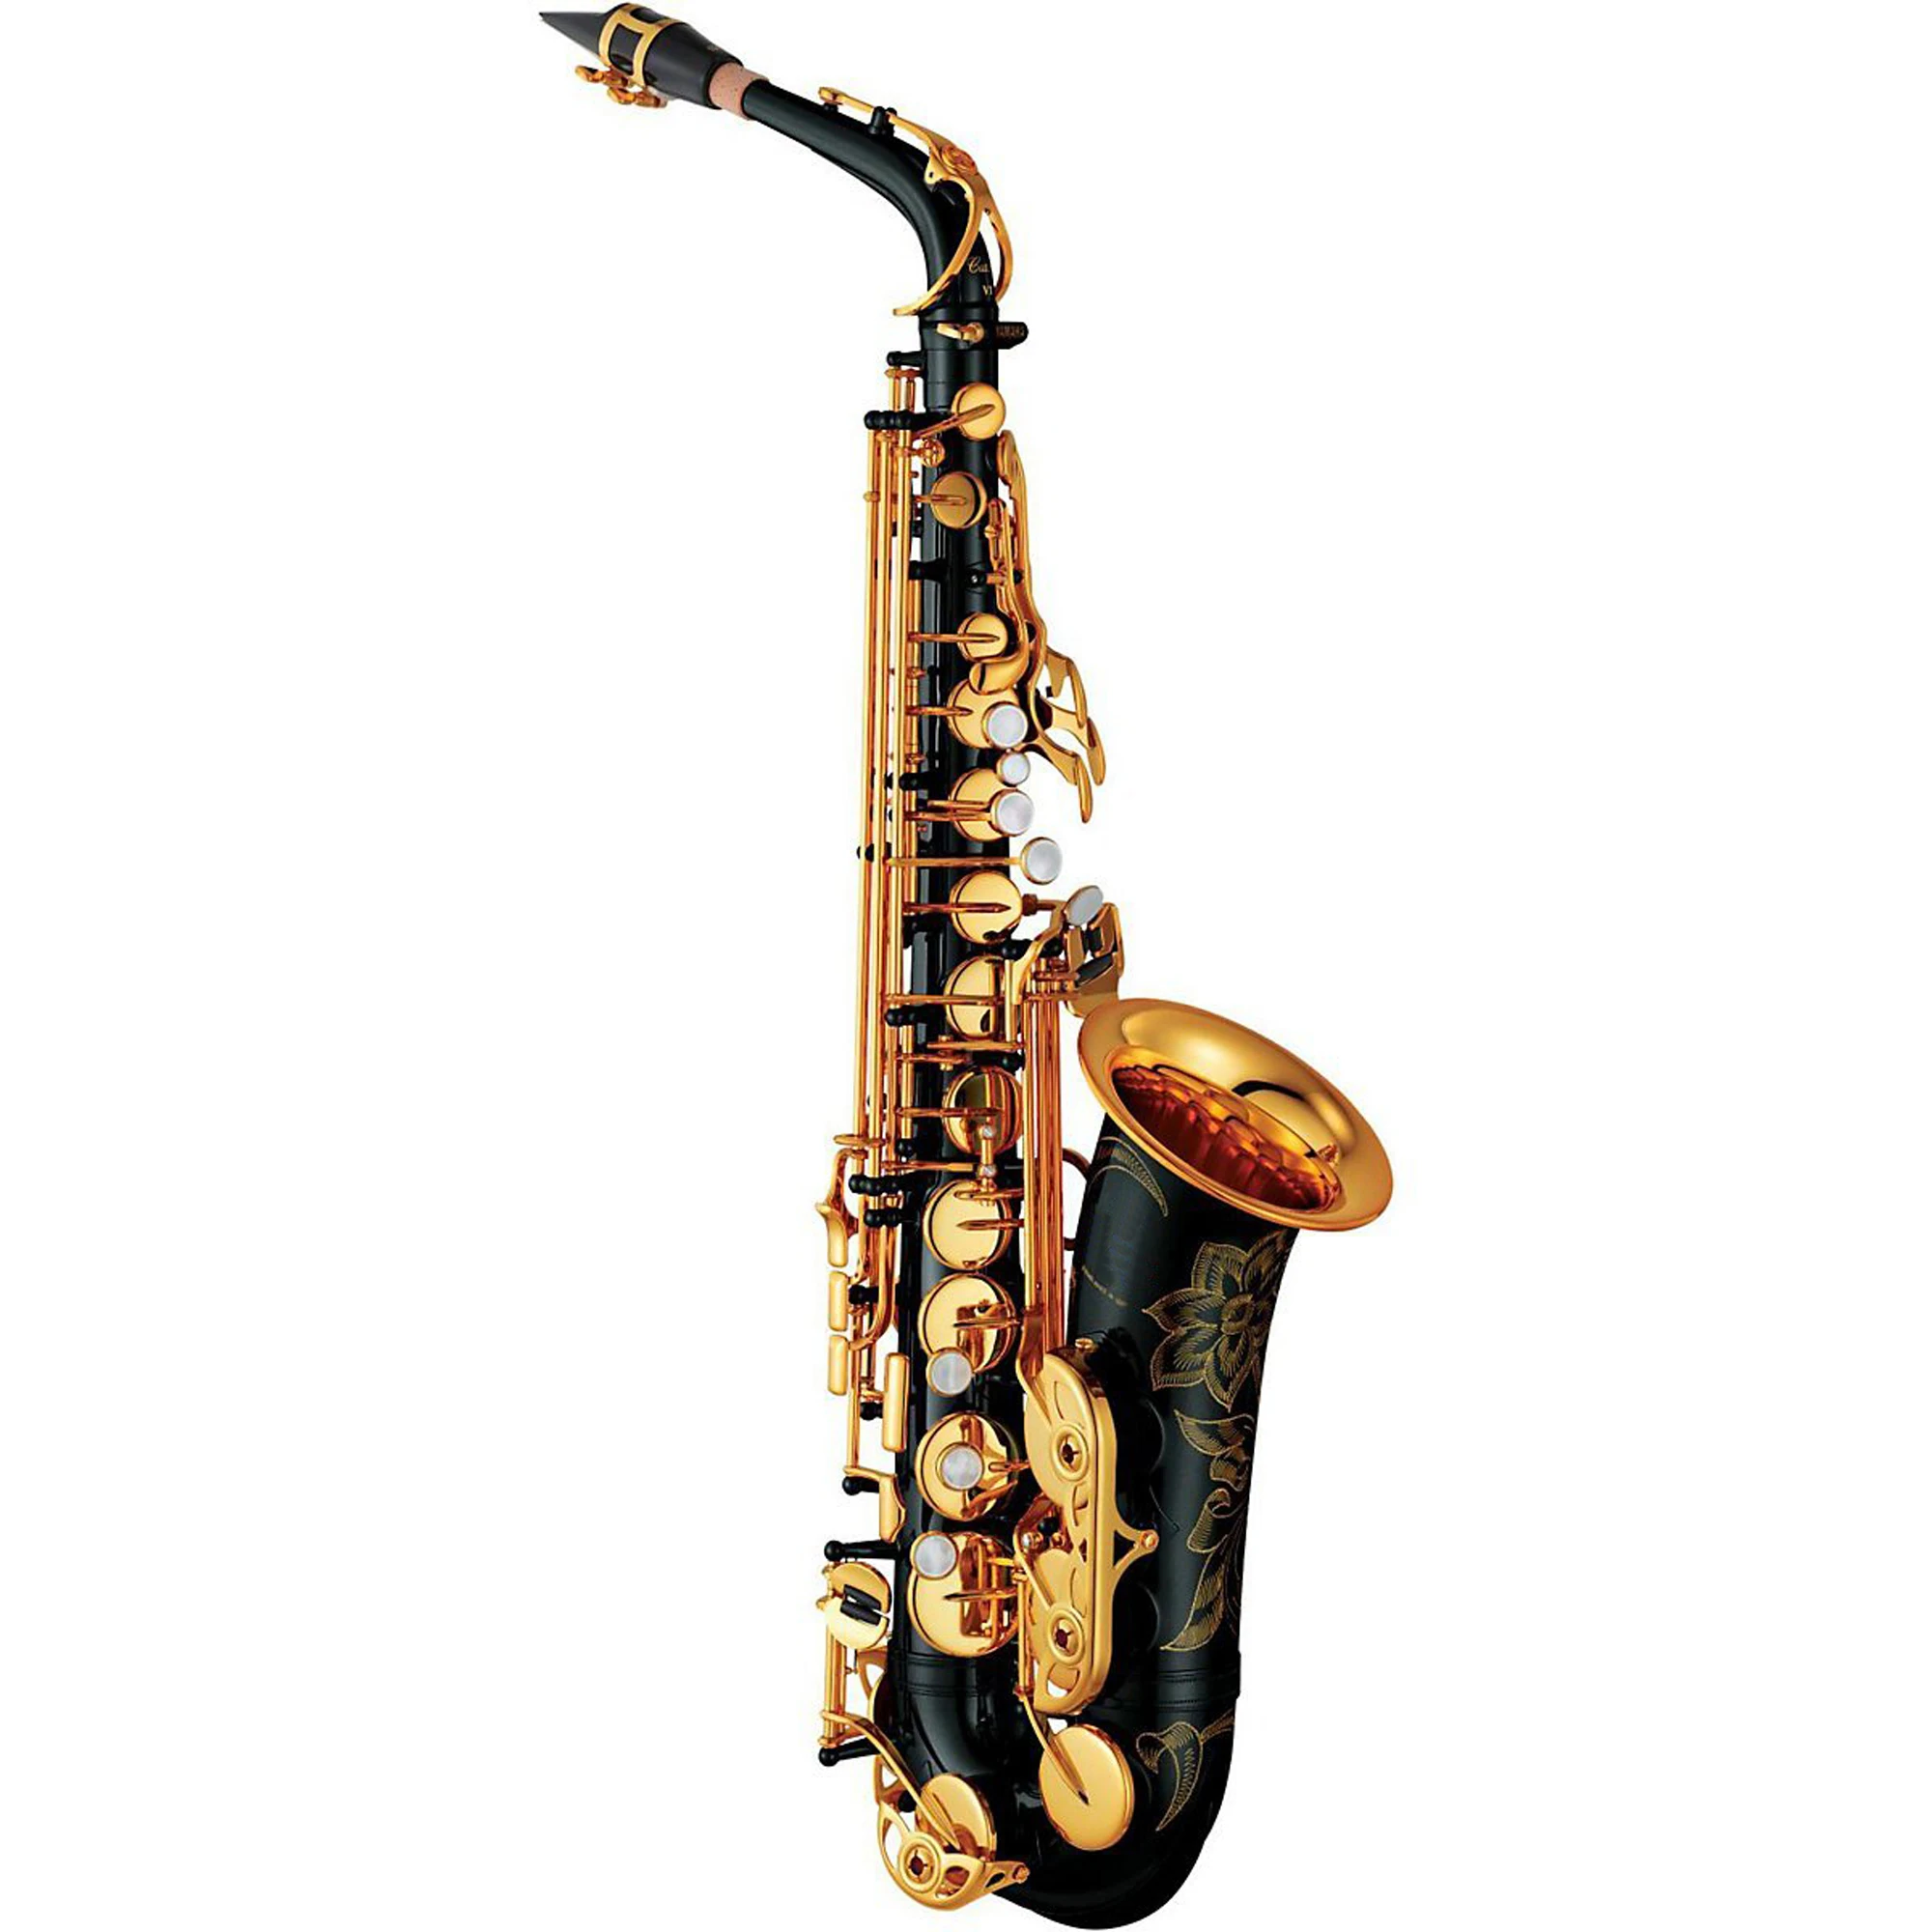 Альт-саксофон MFC 26 Профессиональный альт-саксофон под заказ 280 серия высокий саксофон черный лак с мундштуком тростники чехол на шею